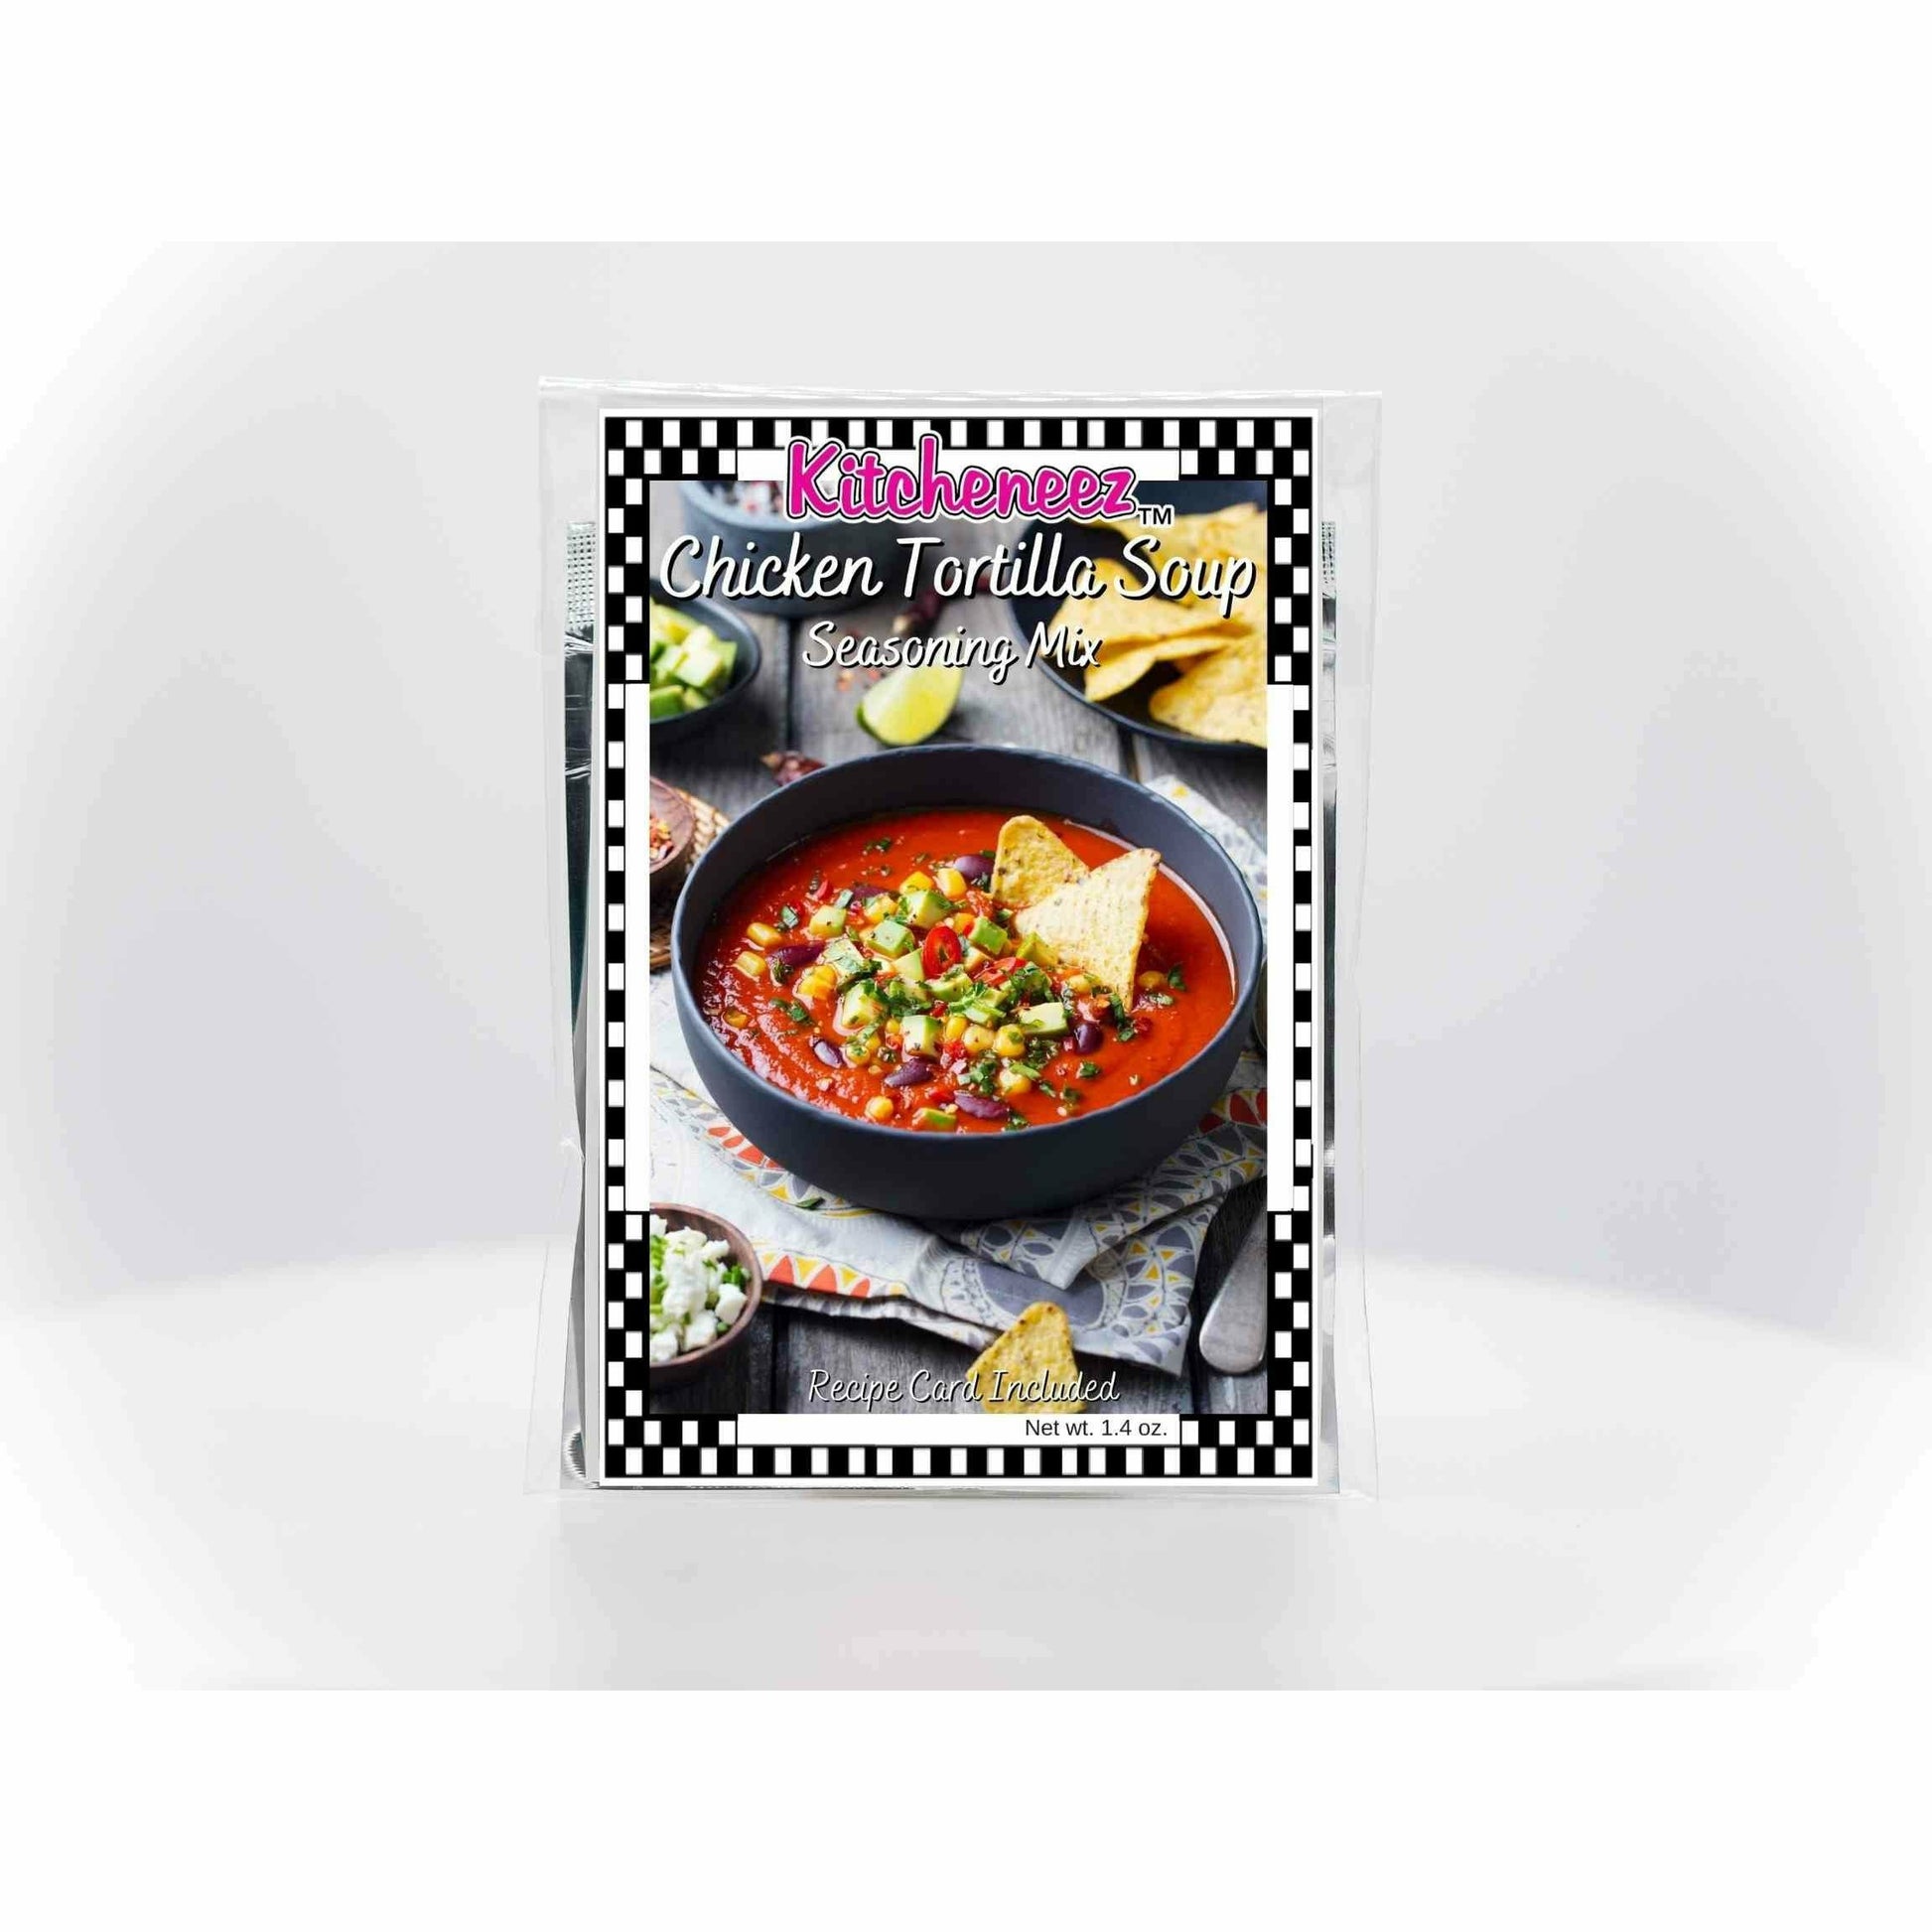 Chicken Tortilla Soup seasoning mix - Kitcheneez Mixes & More!